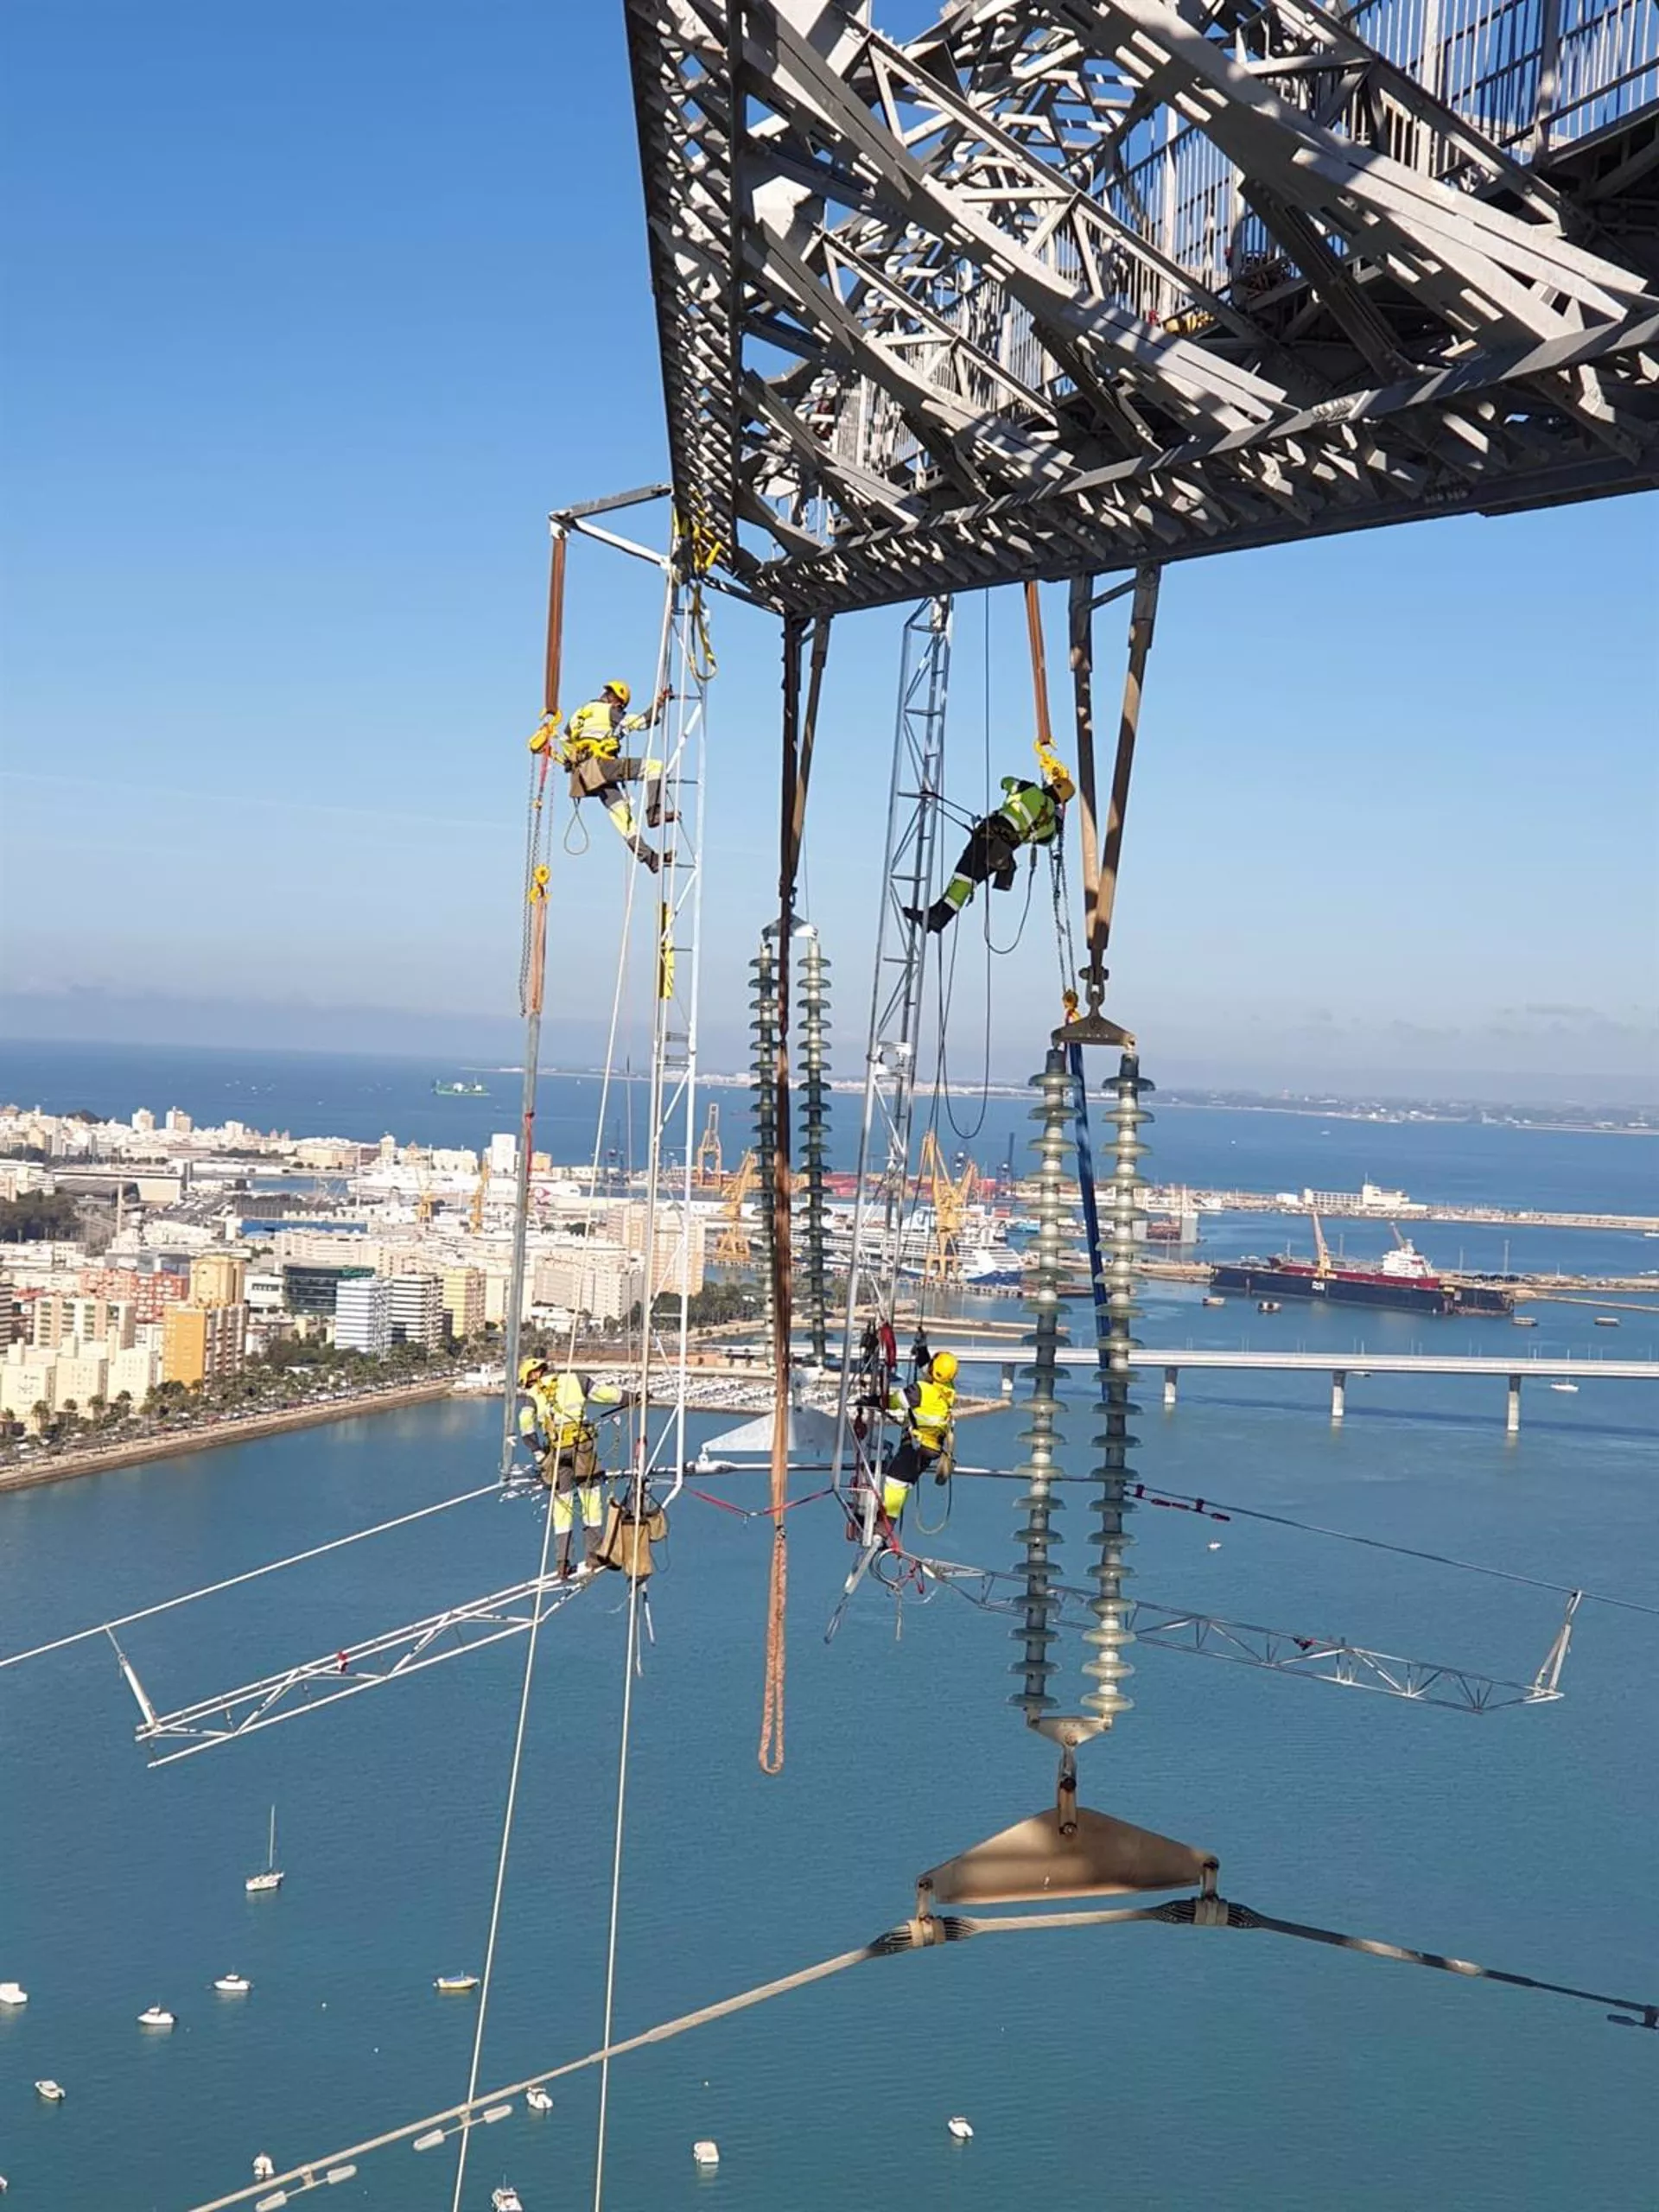 Vista de los trabajos para sustituir el cableado de las torres de la Bahía de Cádiz, en imagen de archivo.